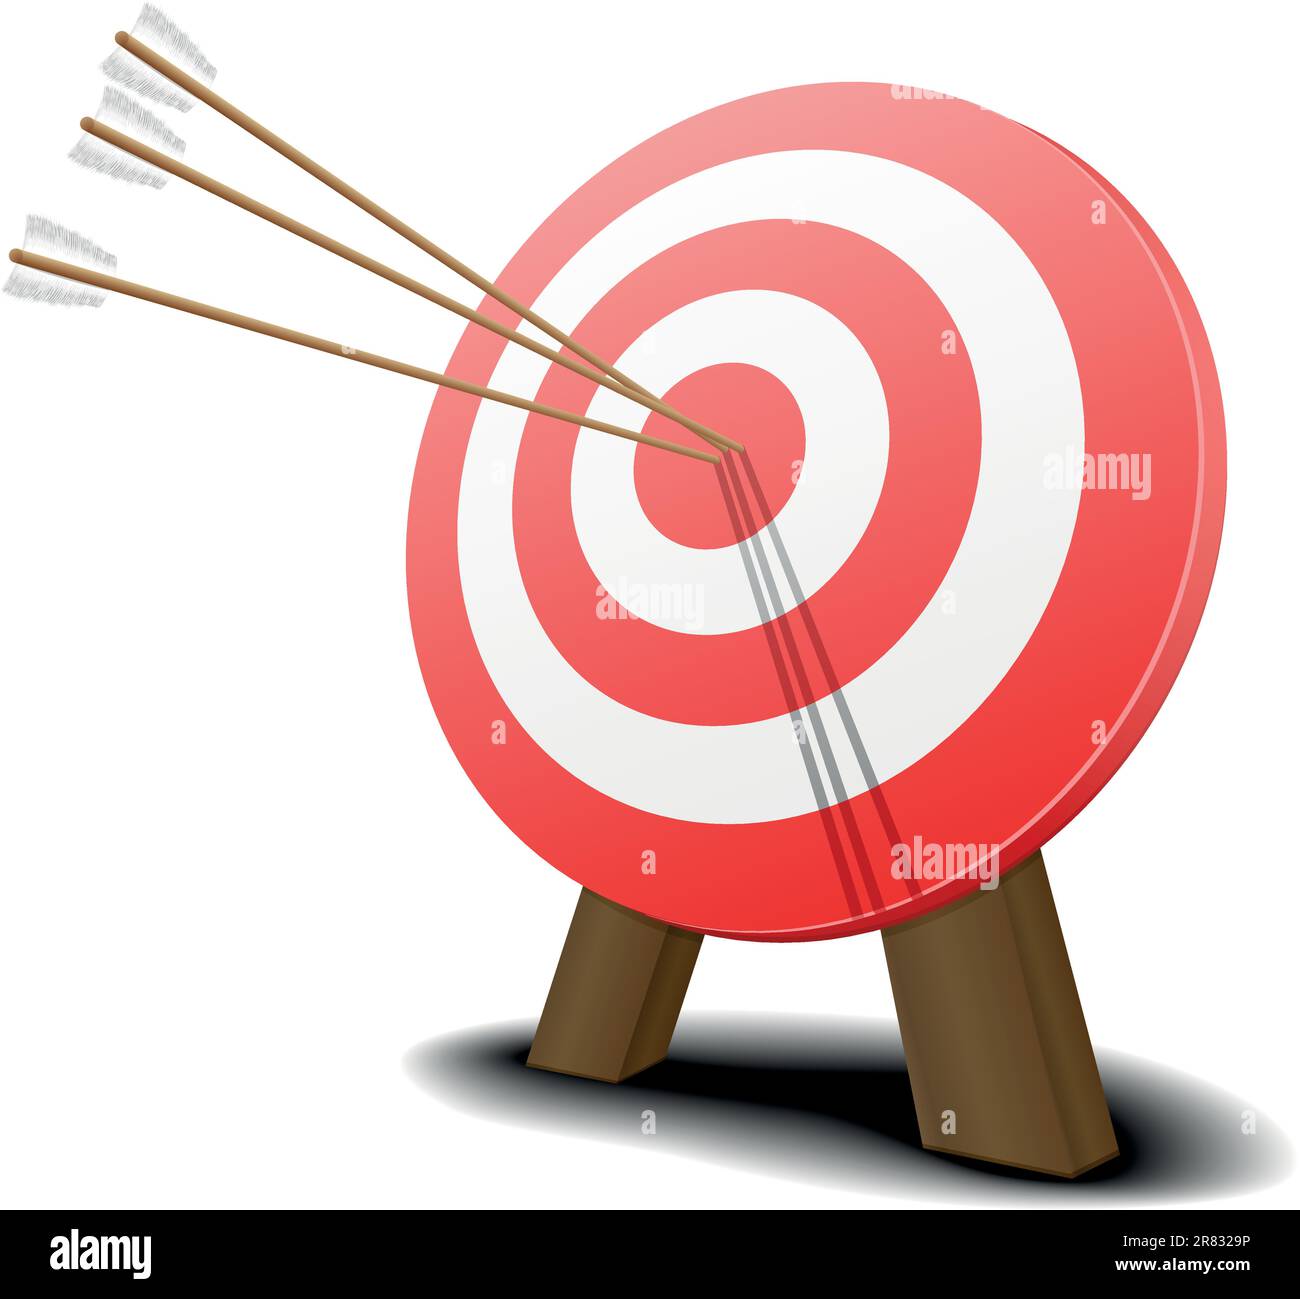 immagine di un bersaglio rosso con tre frecce che colpiscono il centro Illustrazione Vettoriale